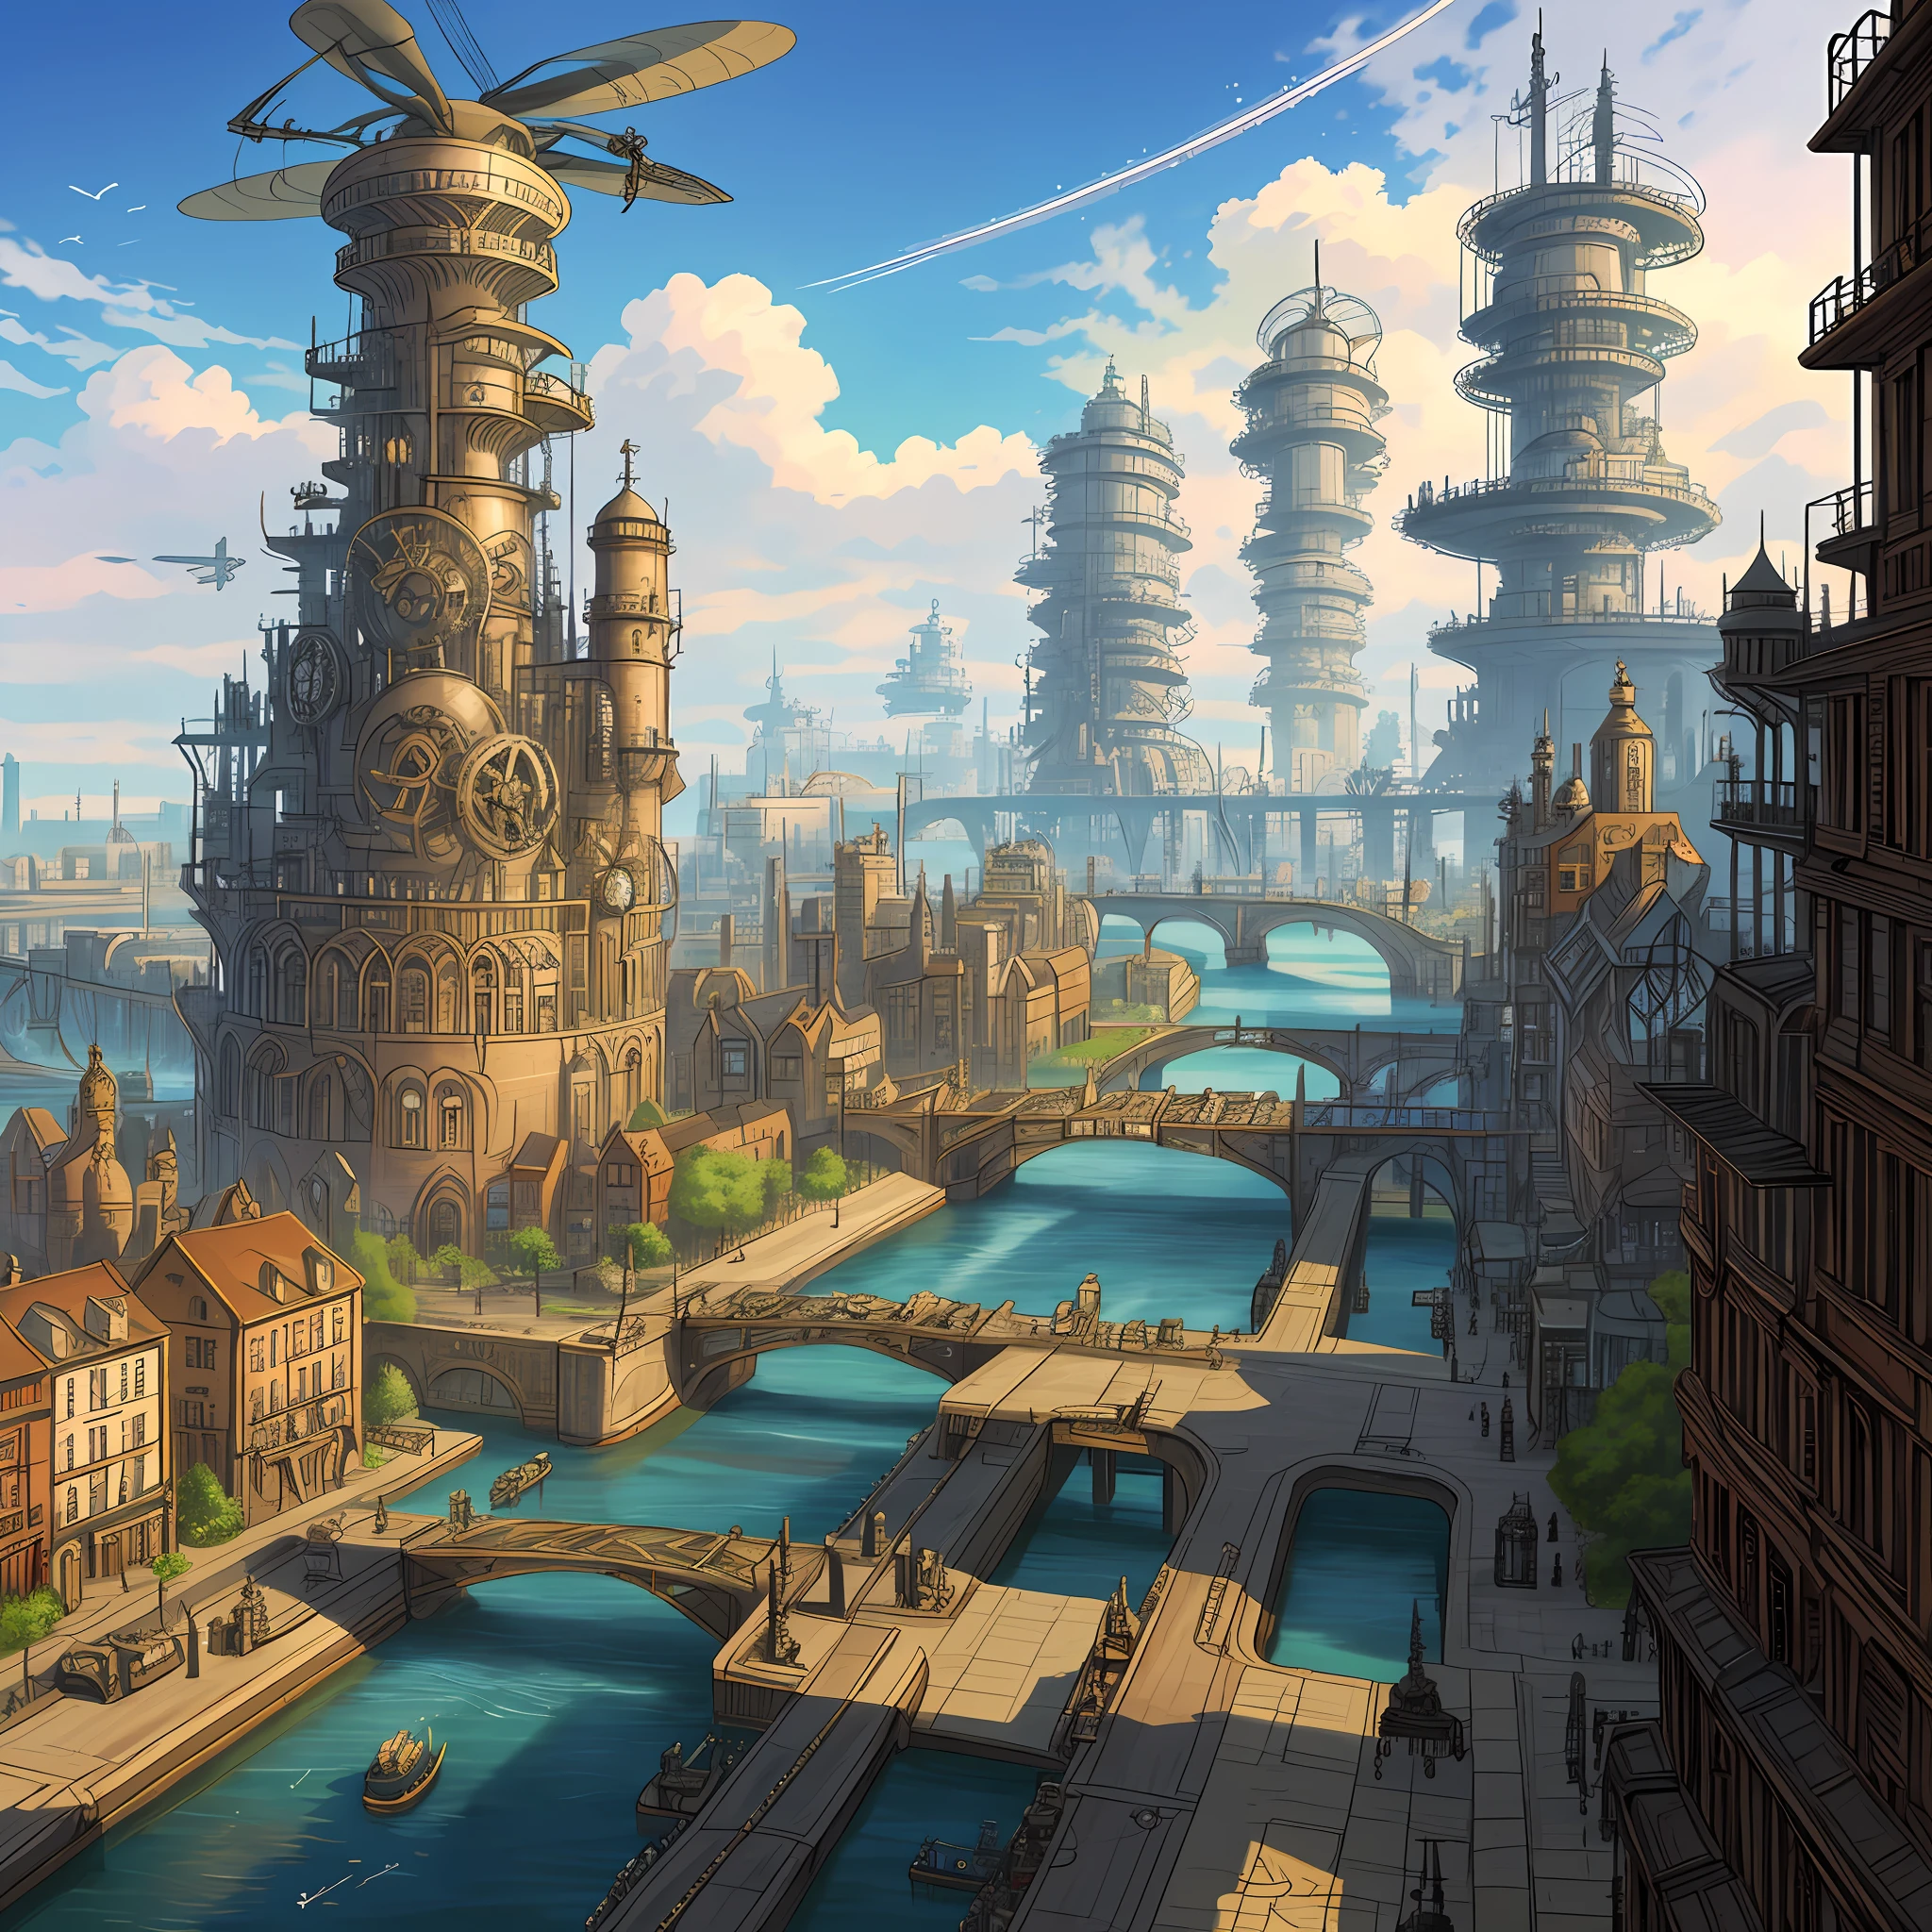 Una ciudad steampunk impulsada por engranajes y hélices, con aeronaves cruzando los cielos, canales de agua que atraviesan las calles y una fábrica gigantesca en el centro.